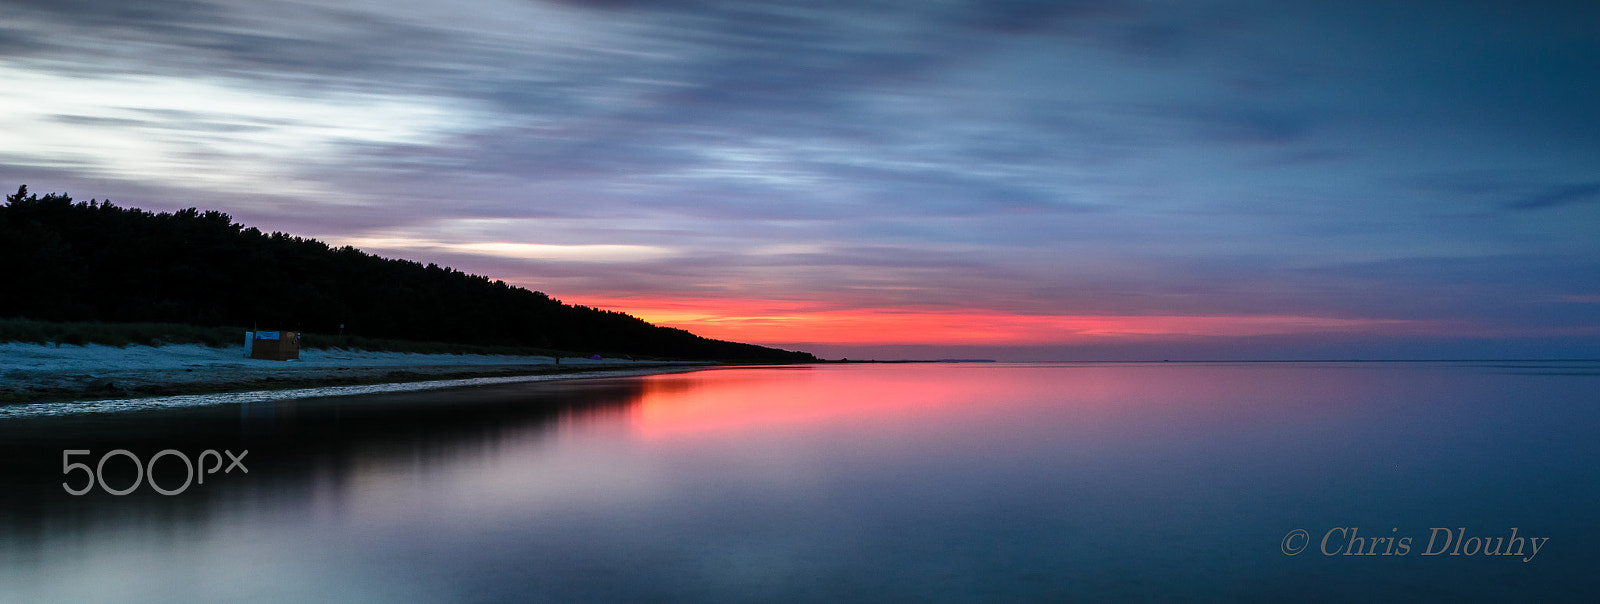 Nikon D7000 sample photo. Sunset on the beach photography